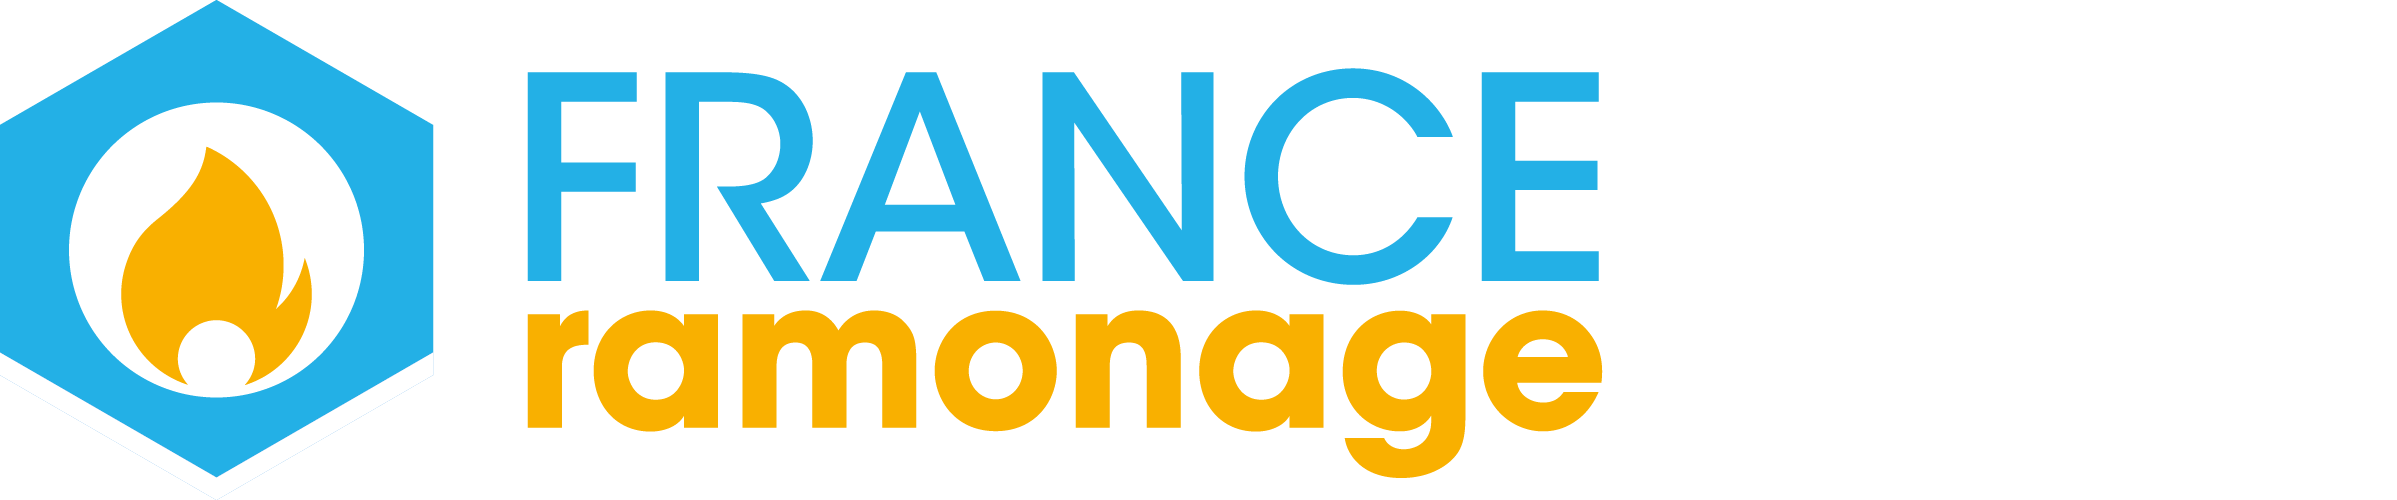 France Ramonage Manager